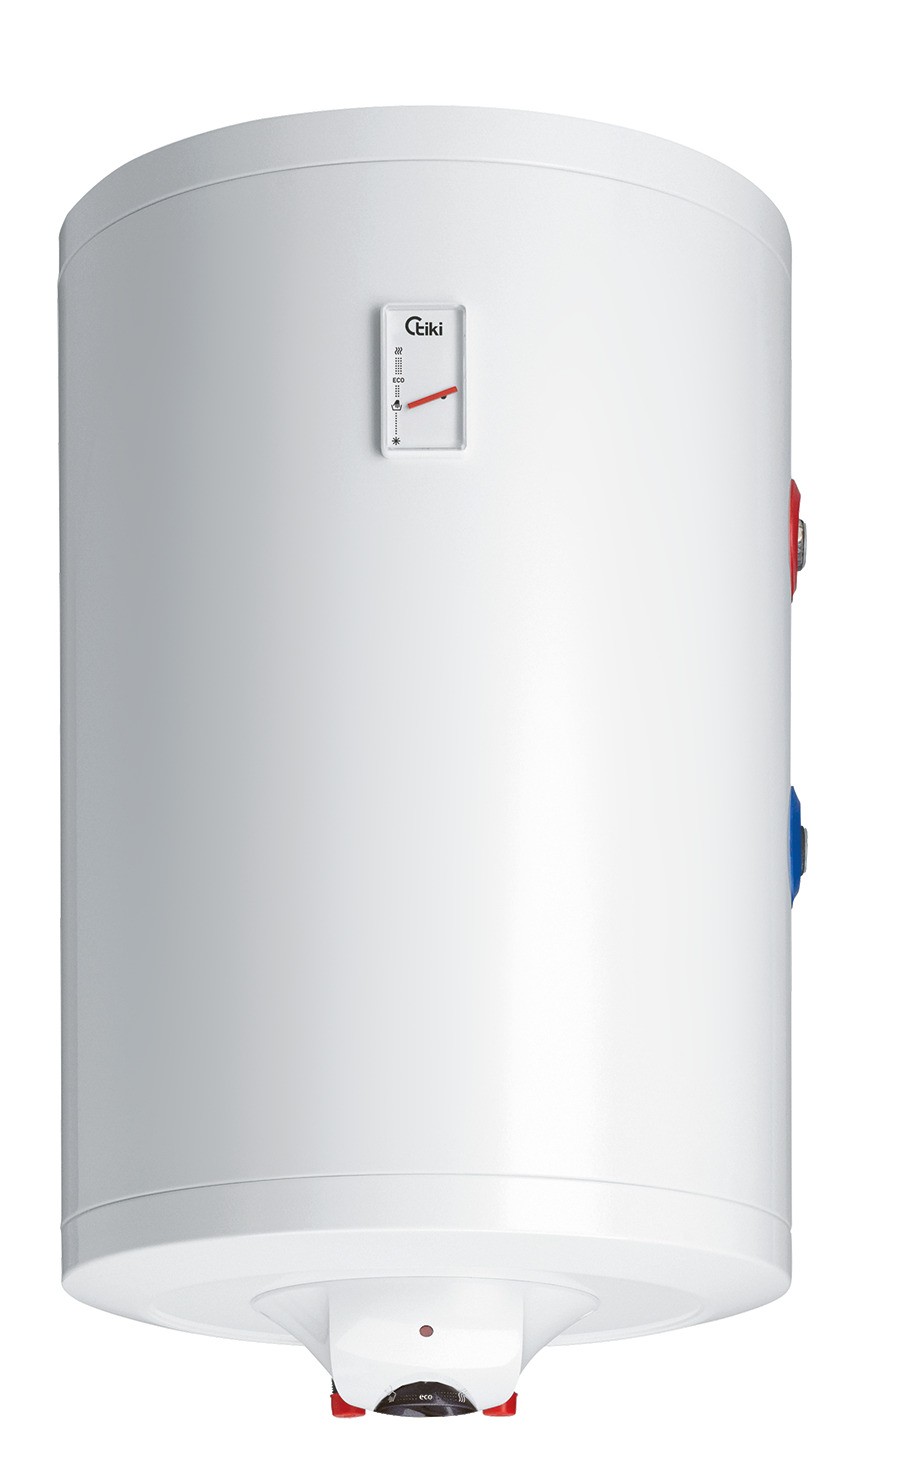 Комбинированный водонагреватель Tiki Prime CR 100 в интернет-магазине, главное фото